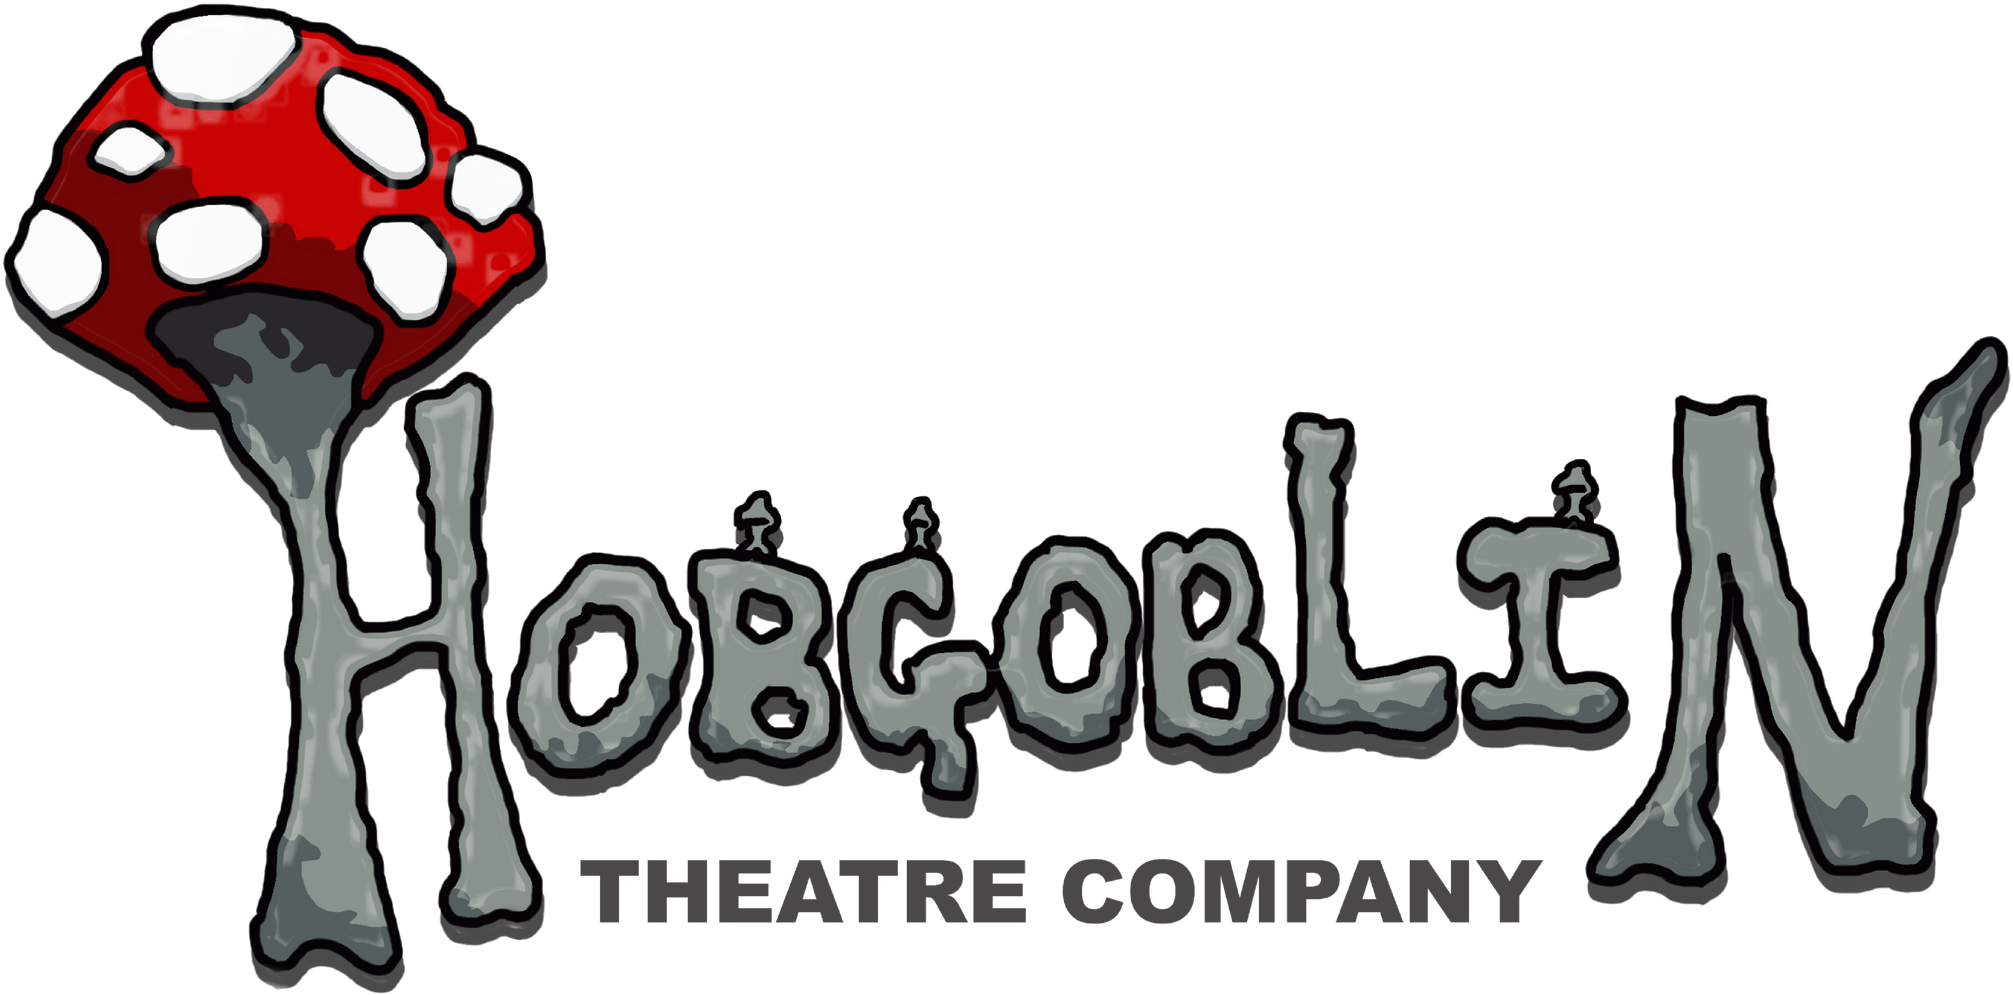 Hobgoblin Theatre Company - Hobgoblin Theatre Clipart (2048x1031), Png Download